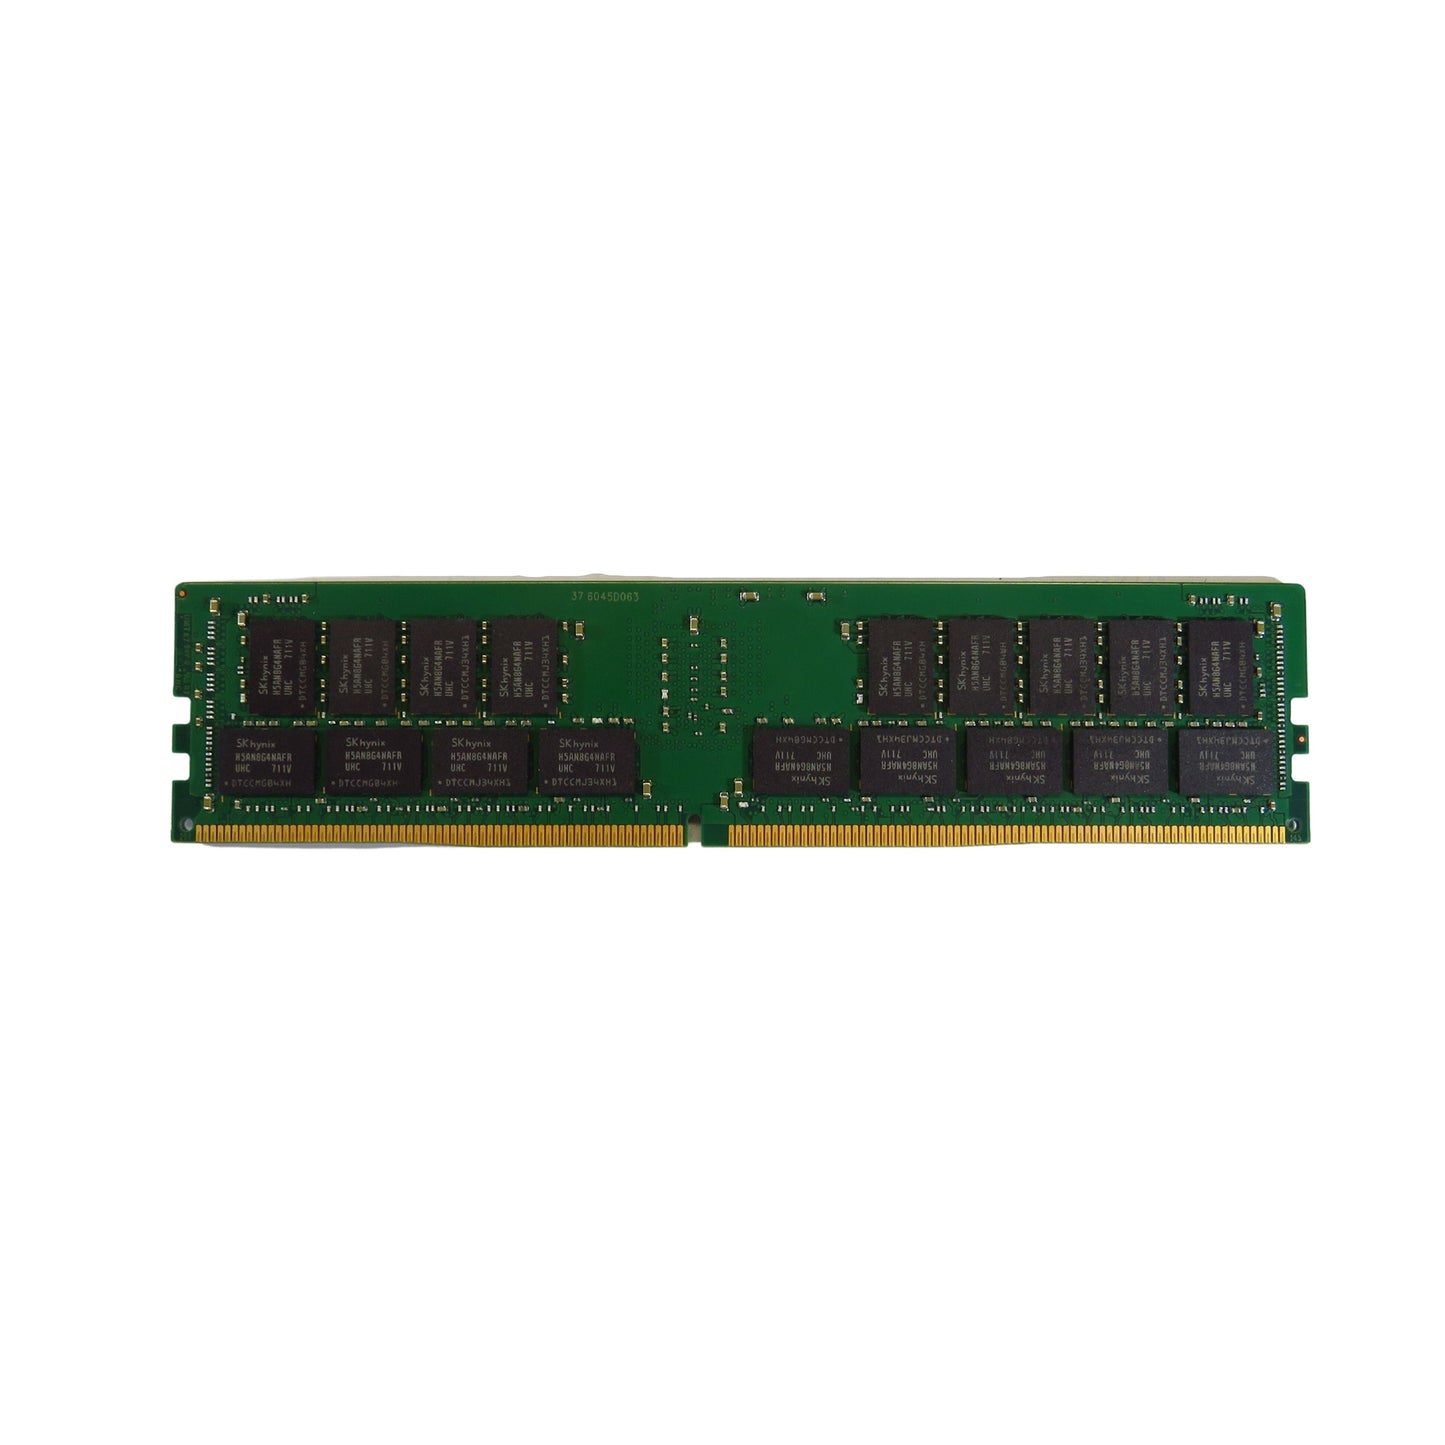 Supermicro MEM-DR432L-HL02-ER24 32GB 2Rx4 2400MHz DDR4 ECC Server Memory (Refurbished)